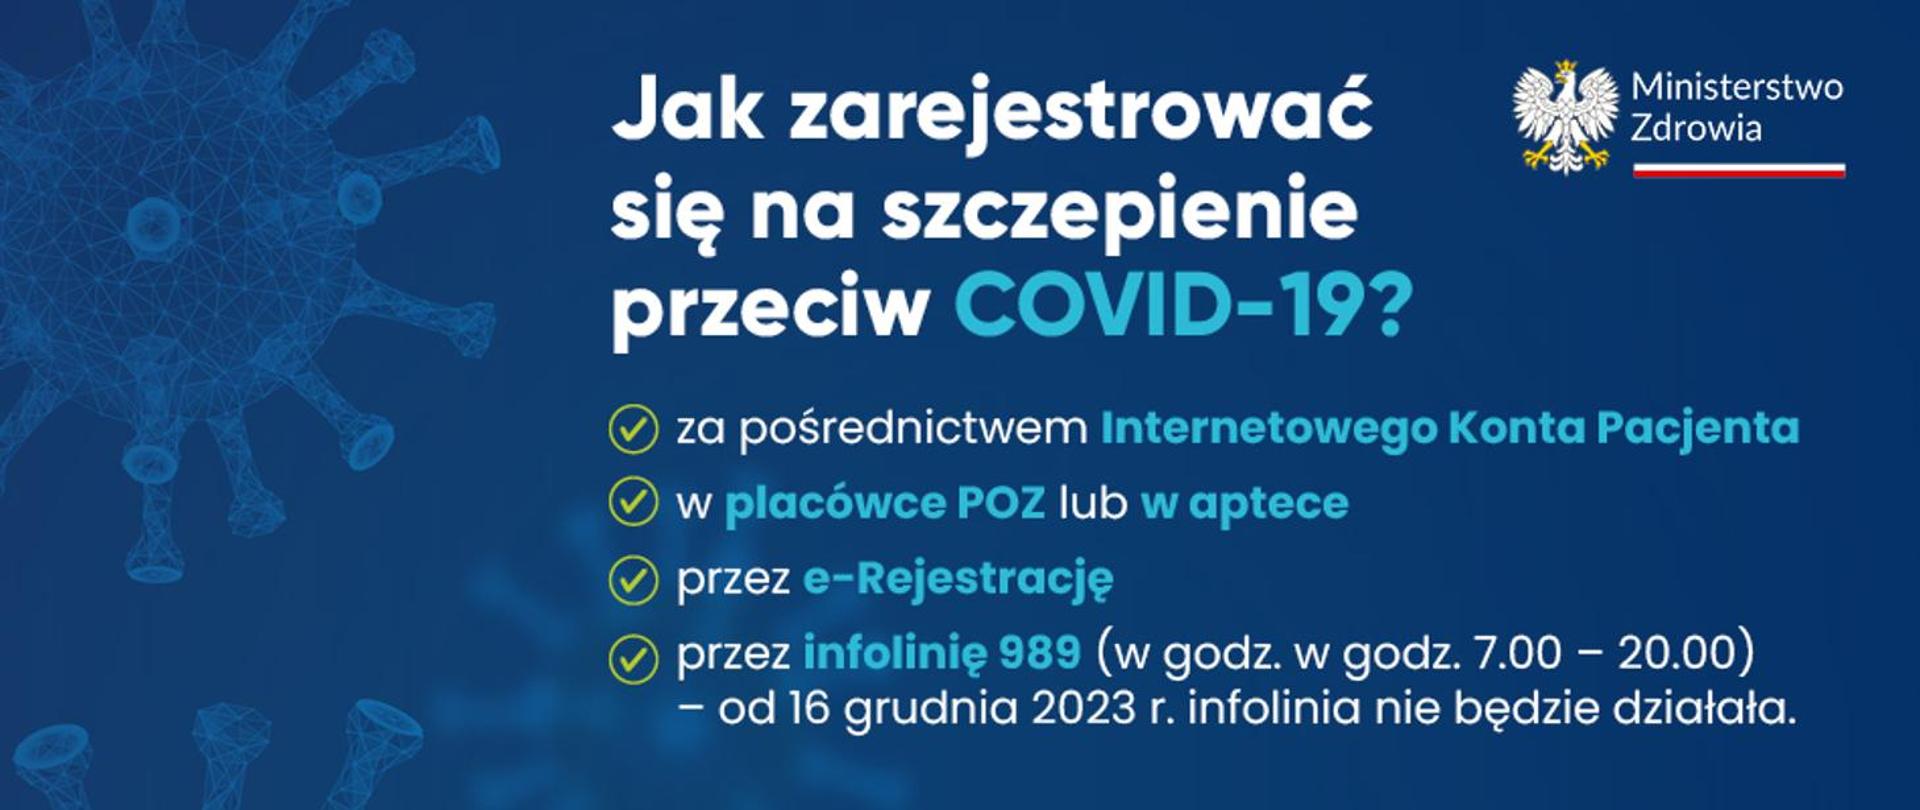 na niebieskim tle napis informujący o szczepieniu p/COVID-19